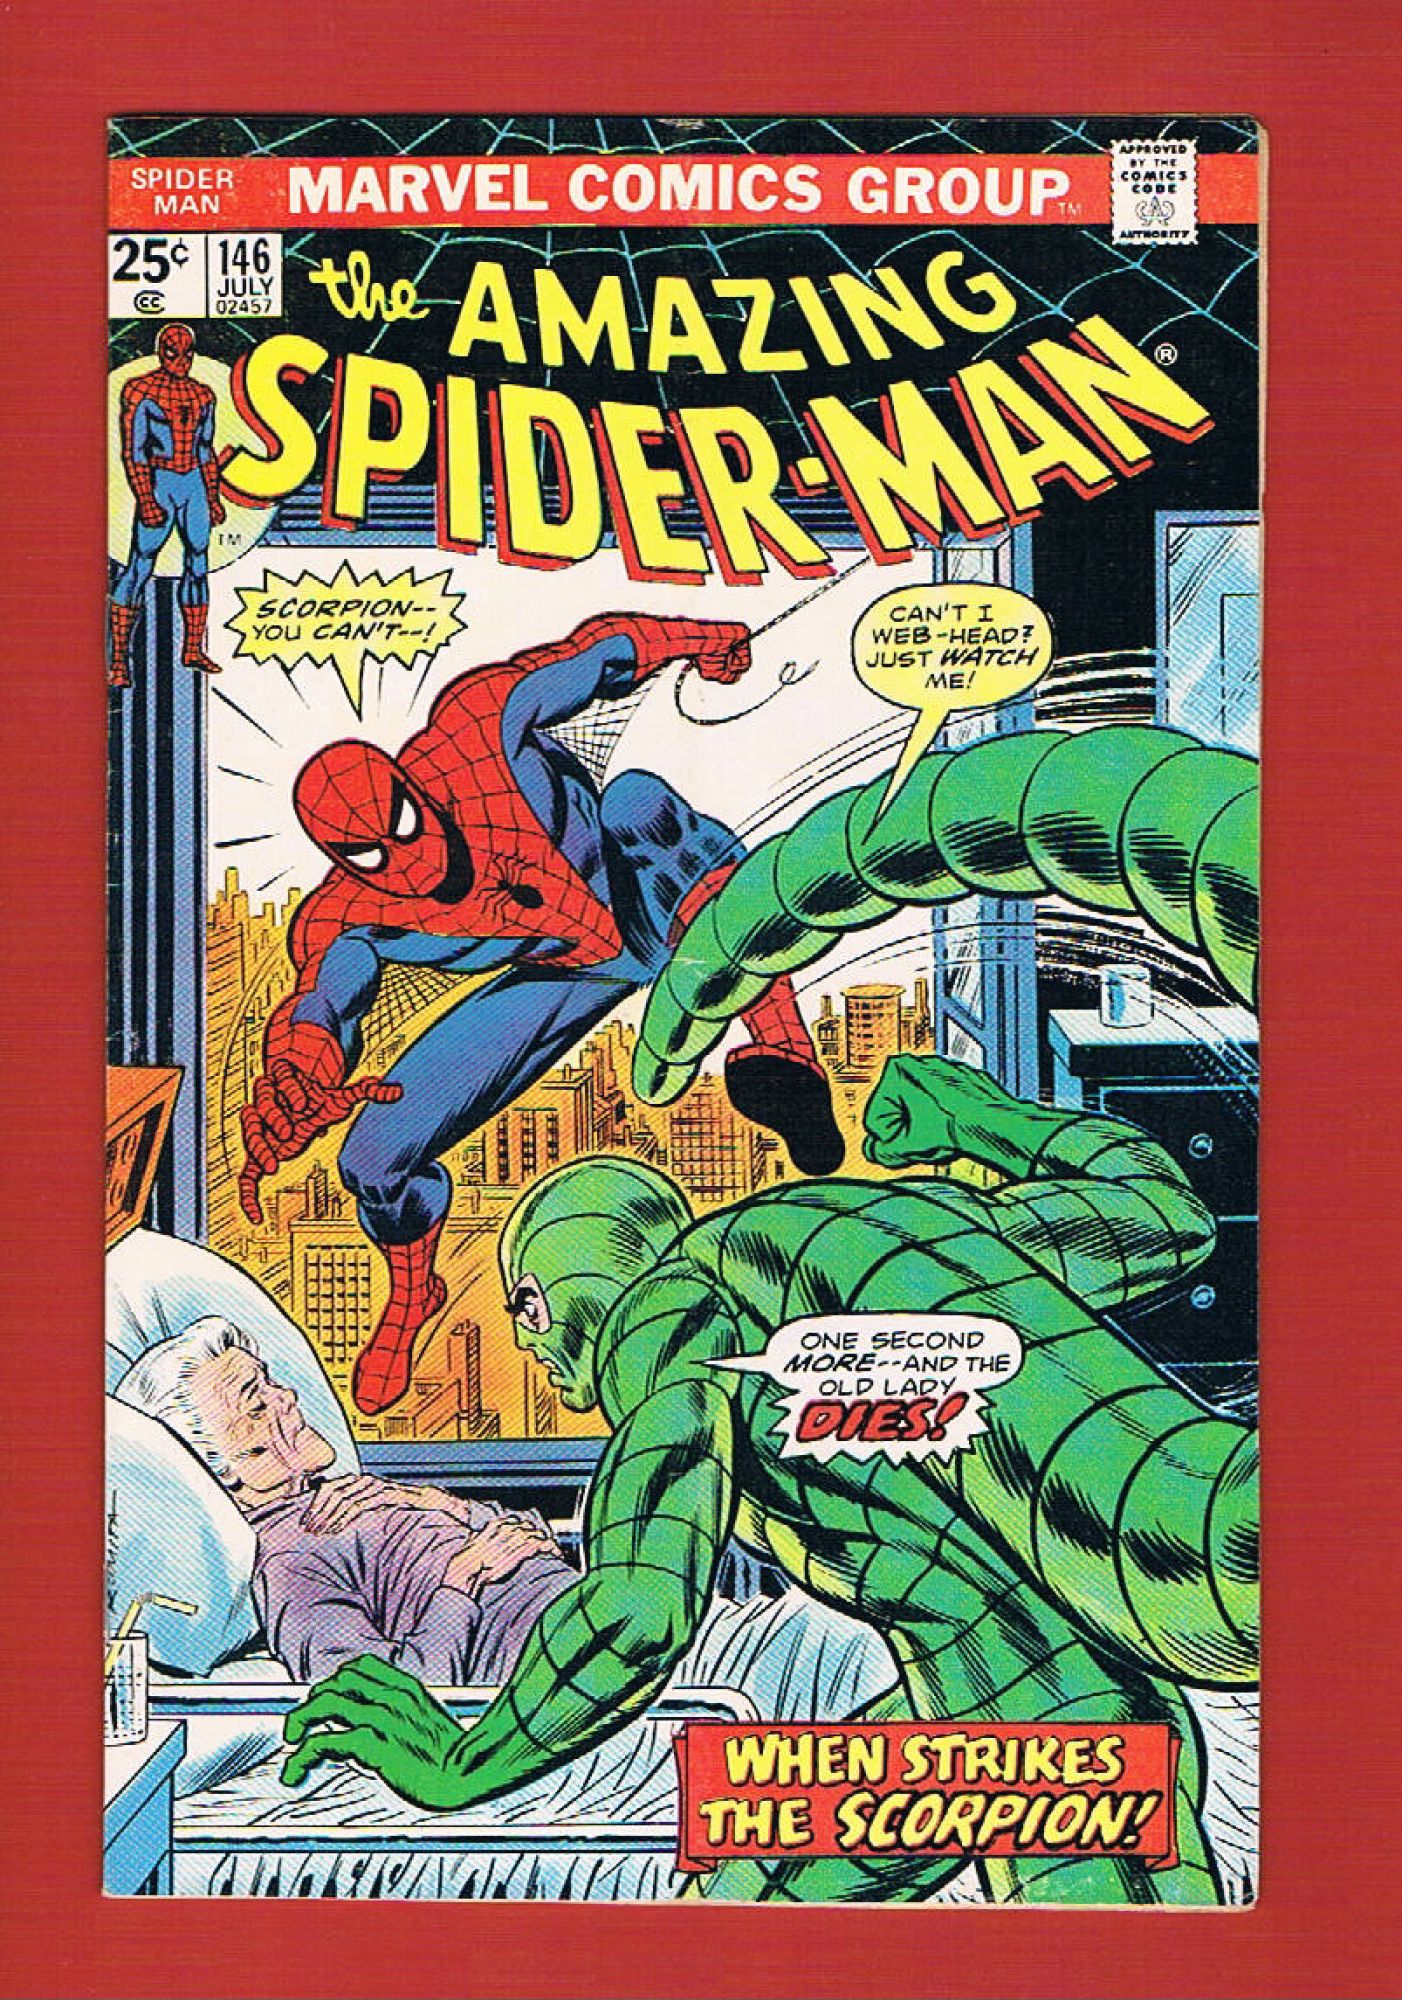 Amazing Spider-Man #146, Jul 1975, 5.0 VG/FN